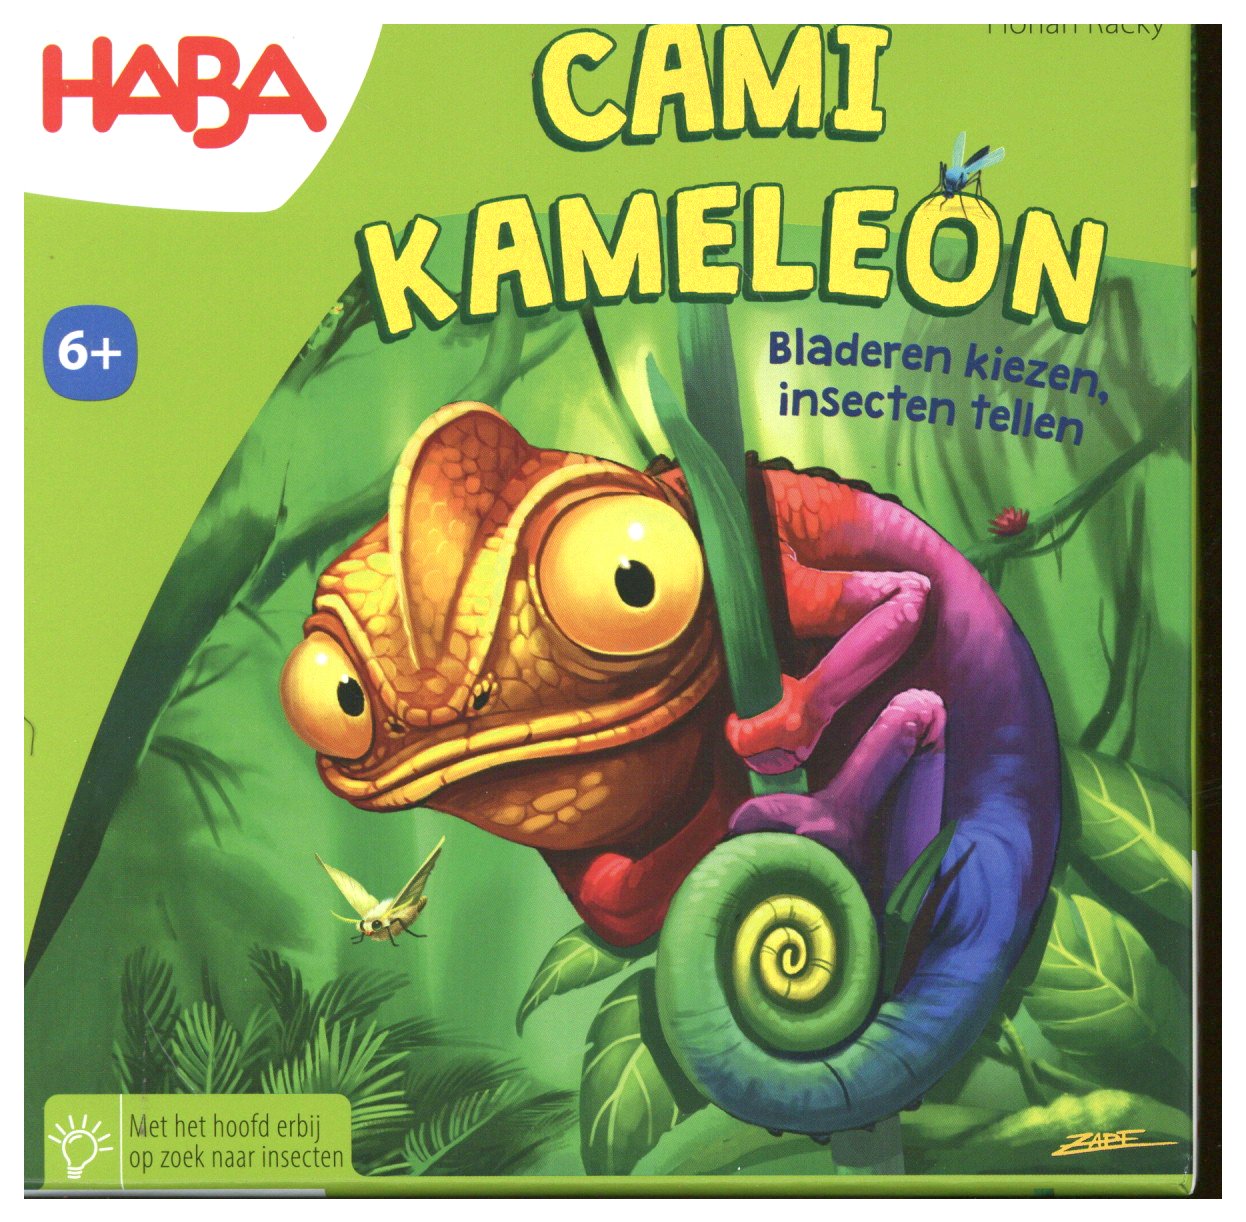 Cami Kameleon